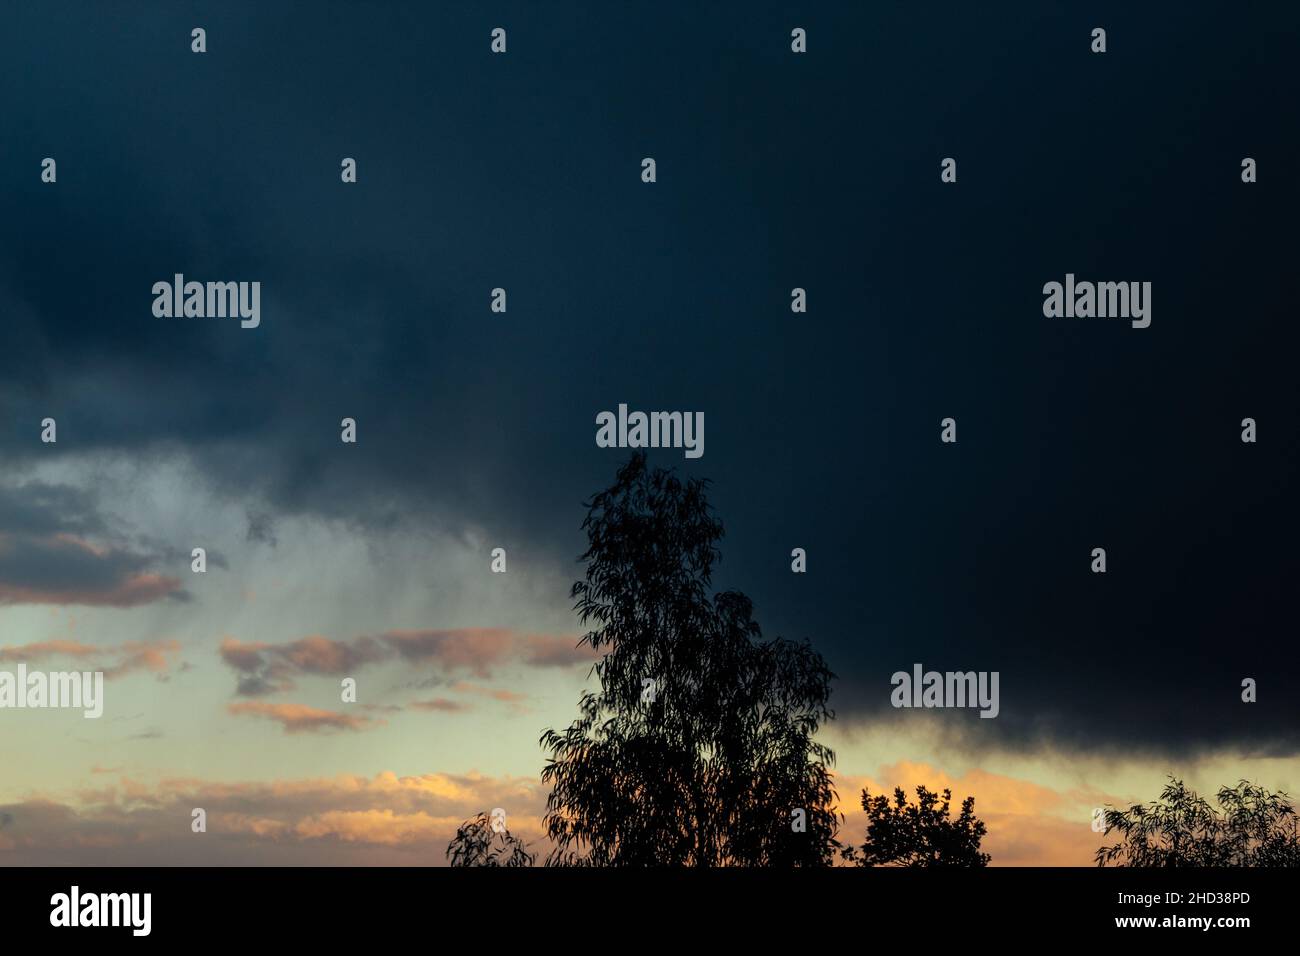 Gros plan d'un arbre avec vue sur un magnifique coucher de soleil Banque D'Images